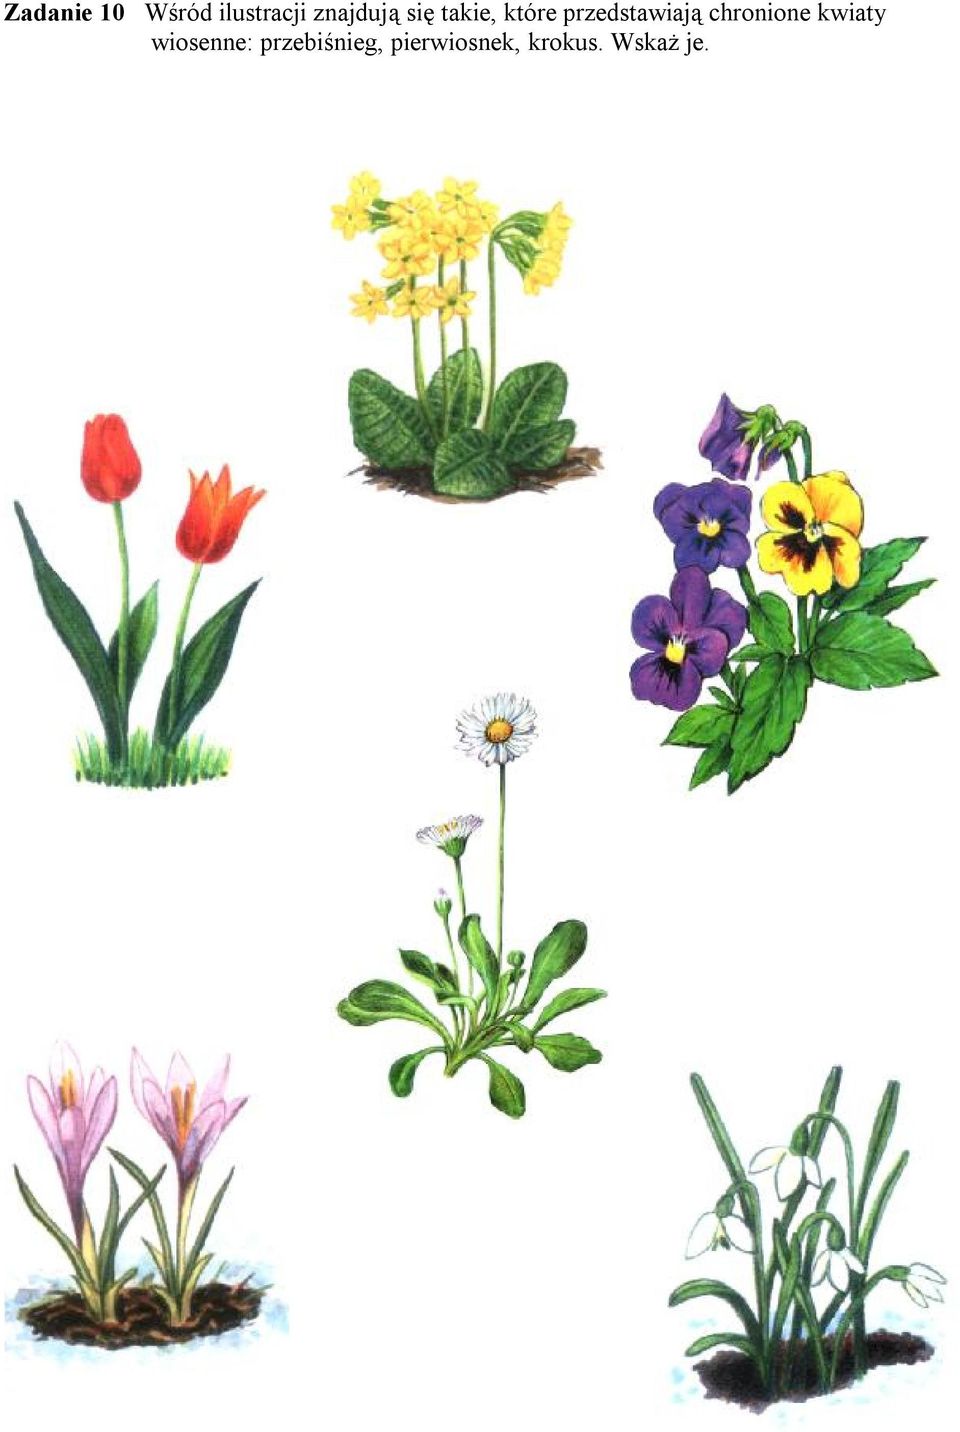 chronione kwiaty wiosenne: